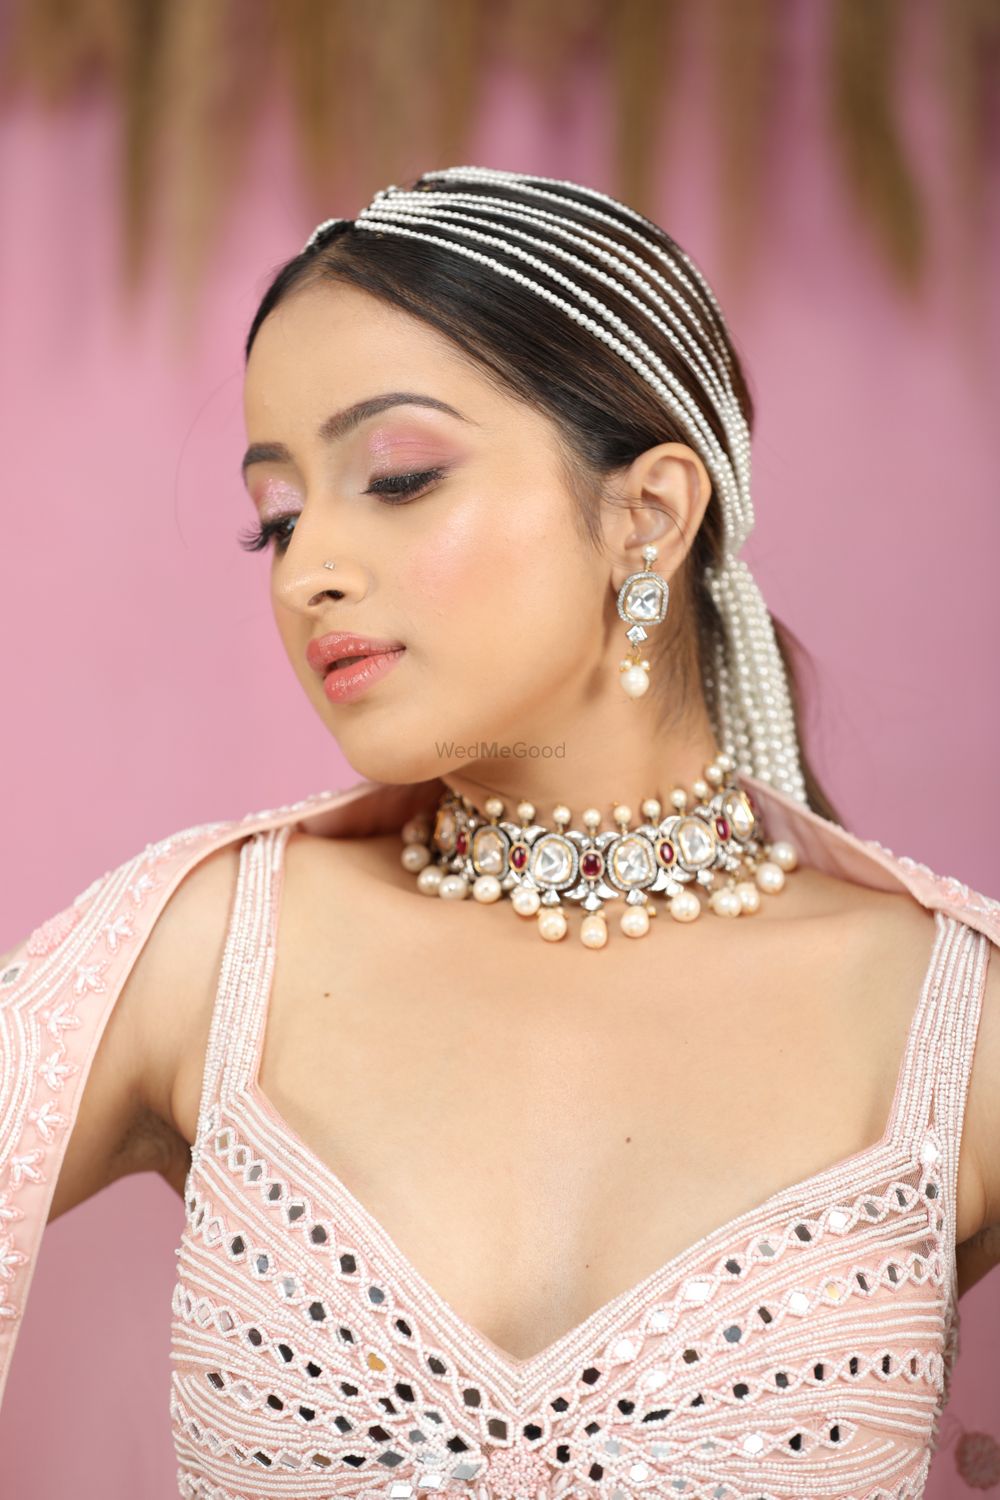 Photo By Shivani Shettye HMUA - Bridal Makeup